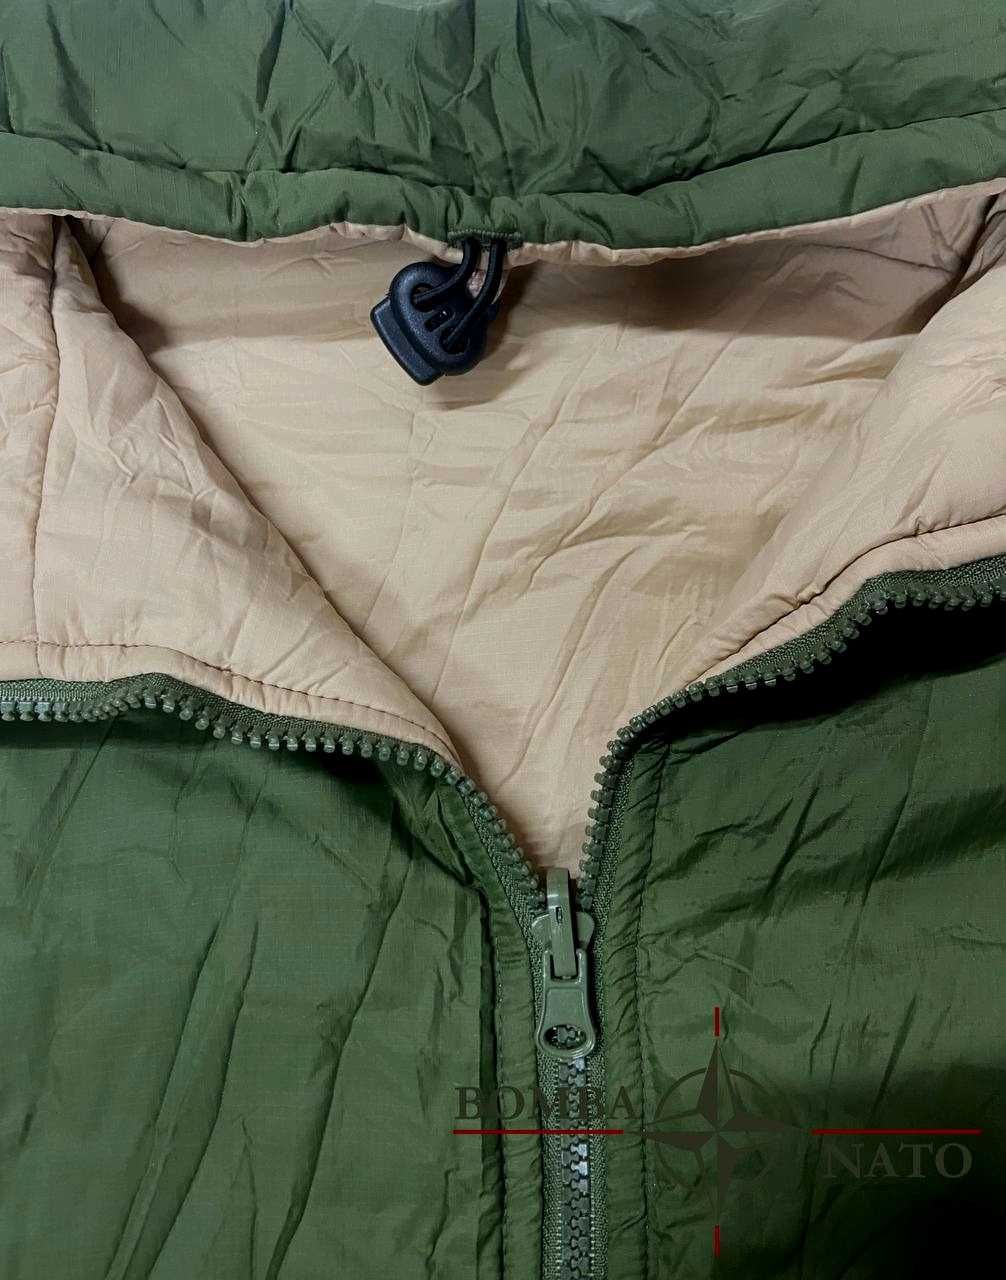 Термокуртка Jacket thermal reversible, Англія, оригінал.